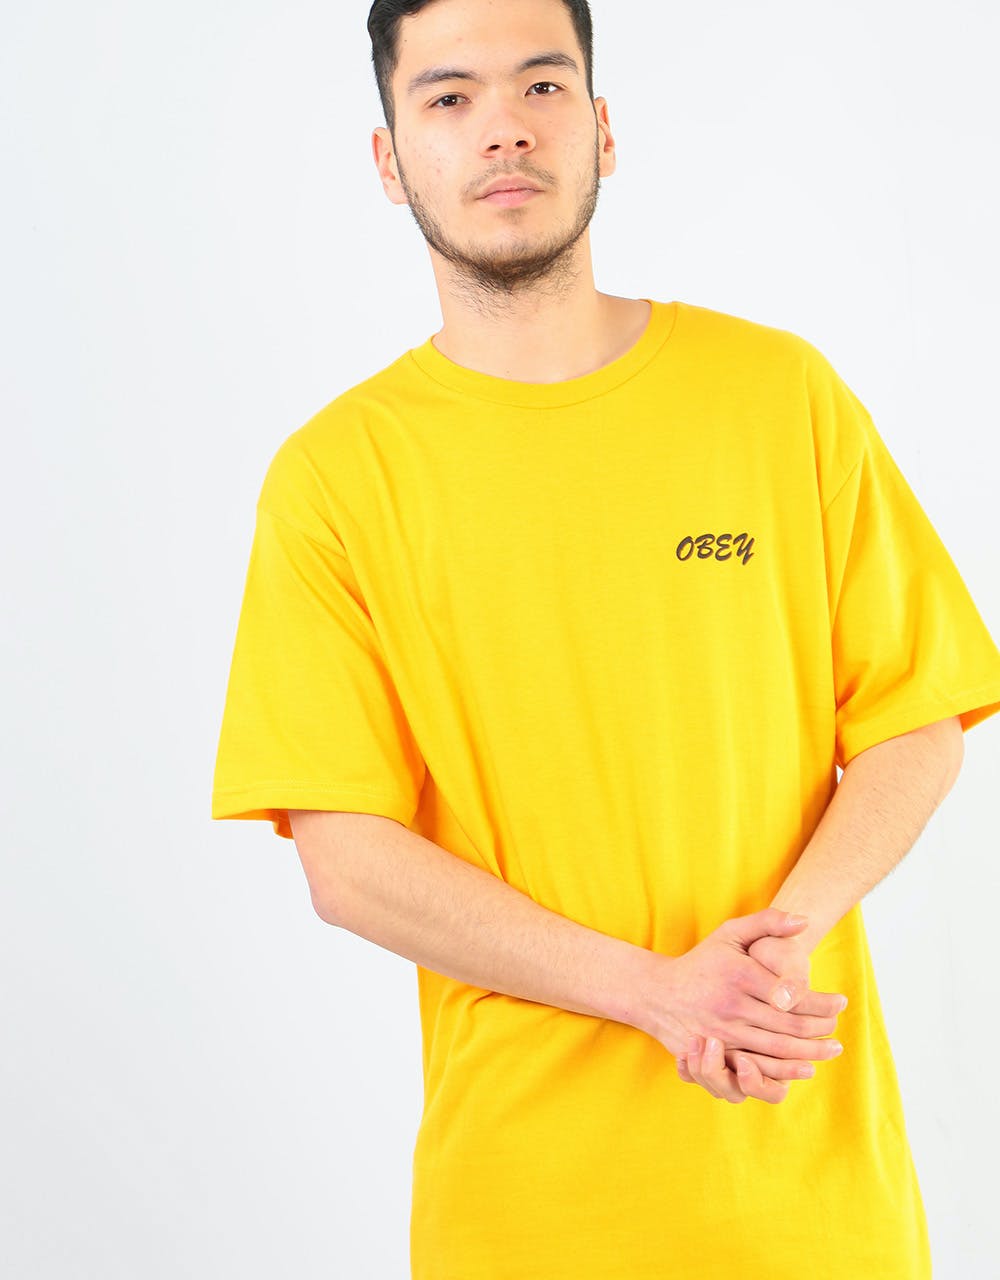 Obey Soundsystem T-Shirt - Gold